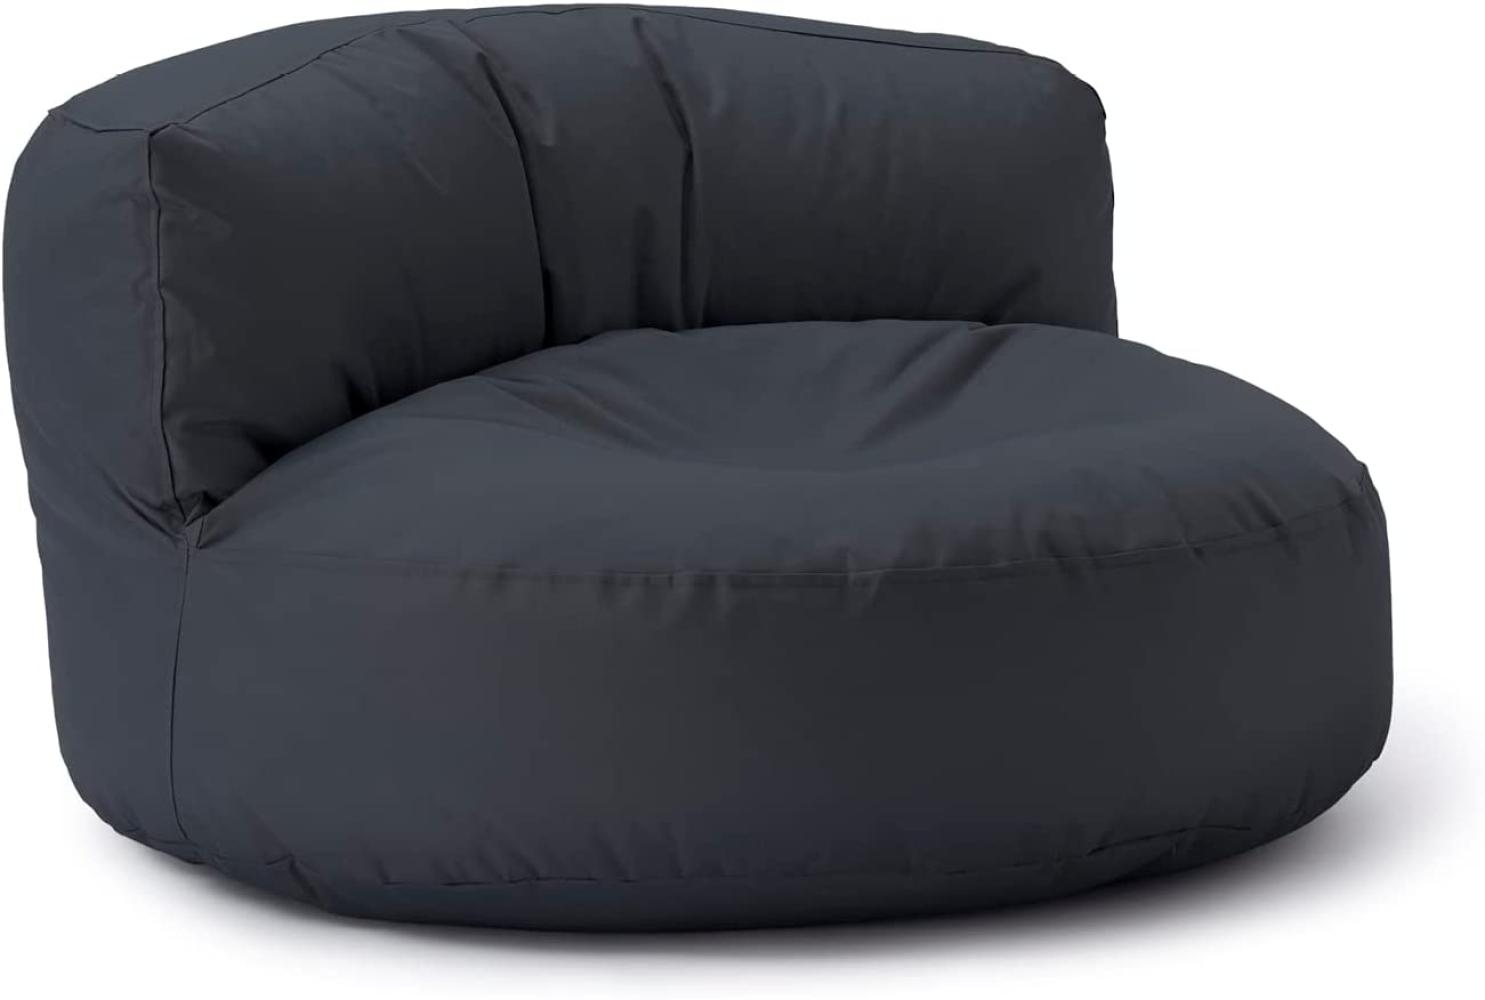 Lumaland Outdoor Sitzsack-Lounge, Rundes Sitzsack-Sofa für draußen, 320l Füllung, 90 x 50 cm, Stahlgrau Bild 1